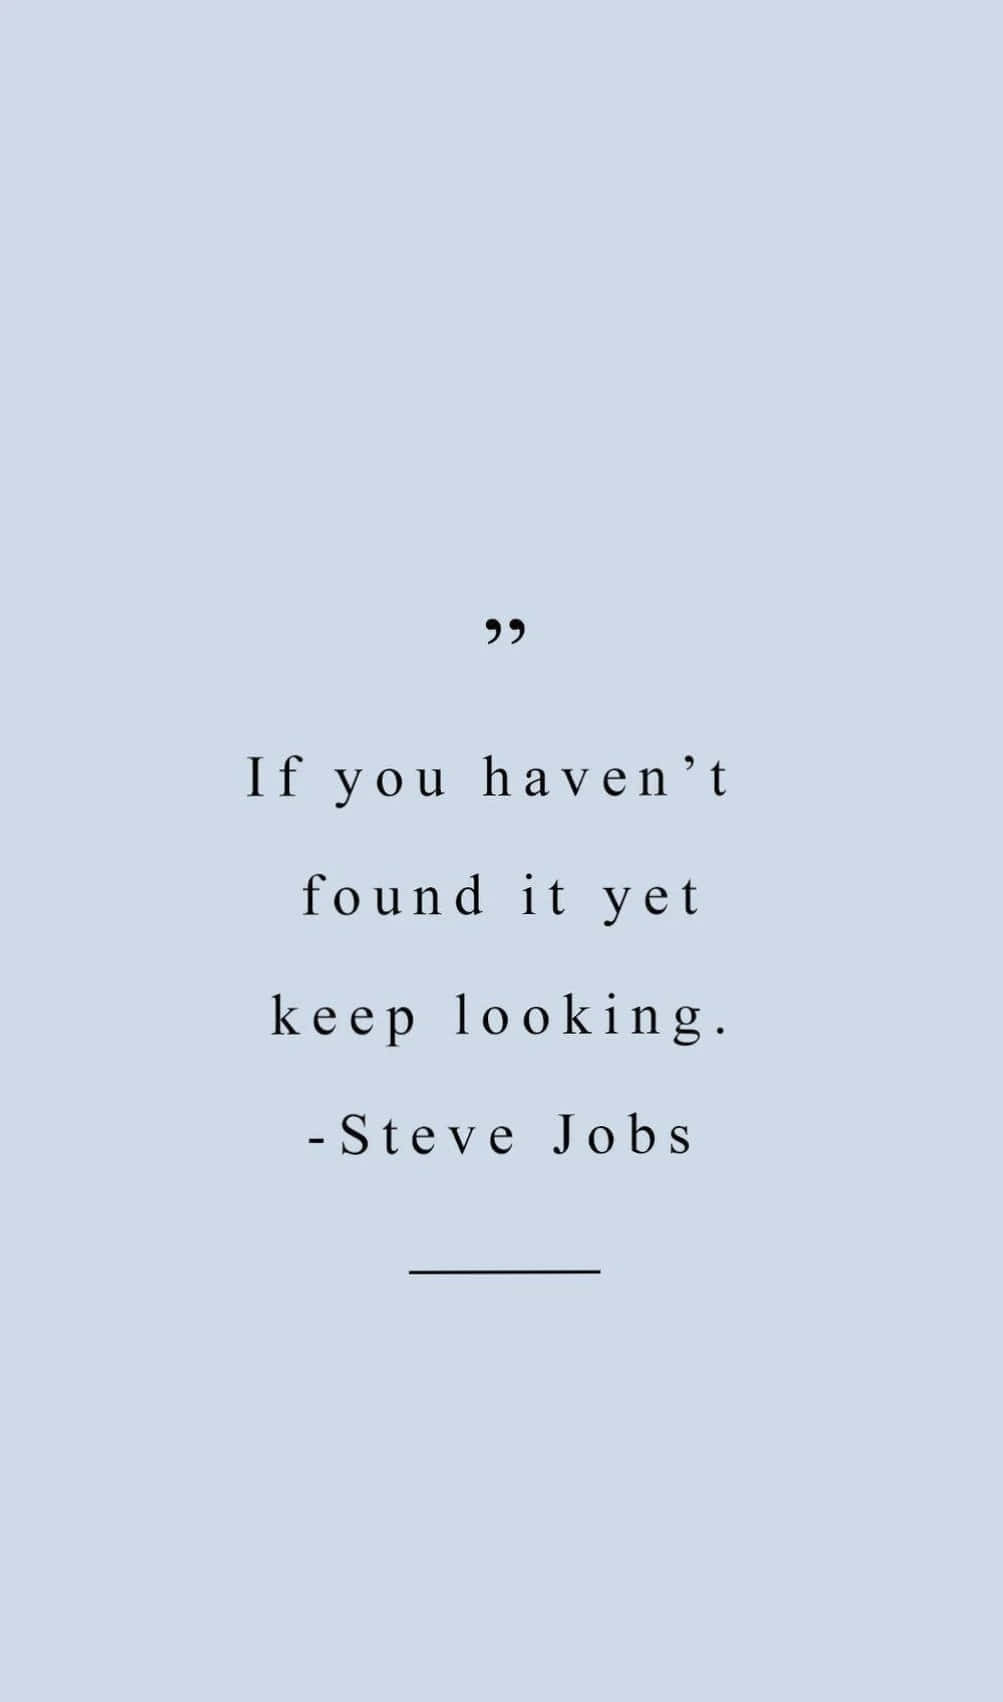 Citazionedi Steve Jobs - Se Non L'hai Ancora Trovato, Continua A Cercare